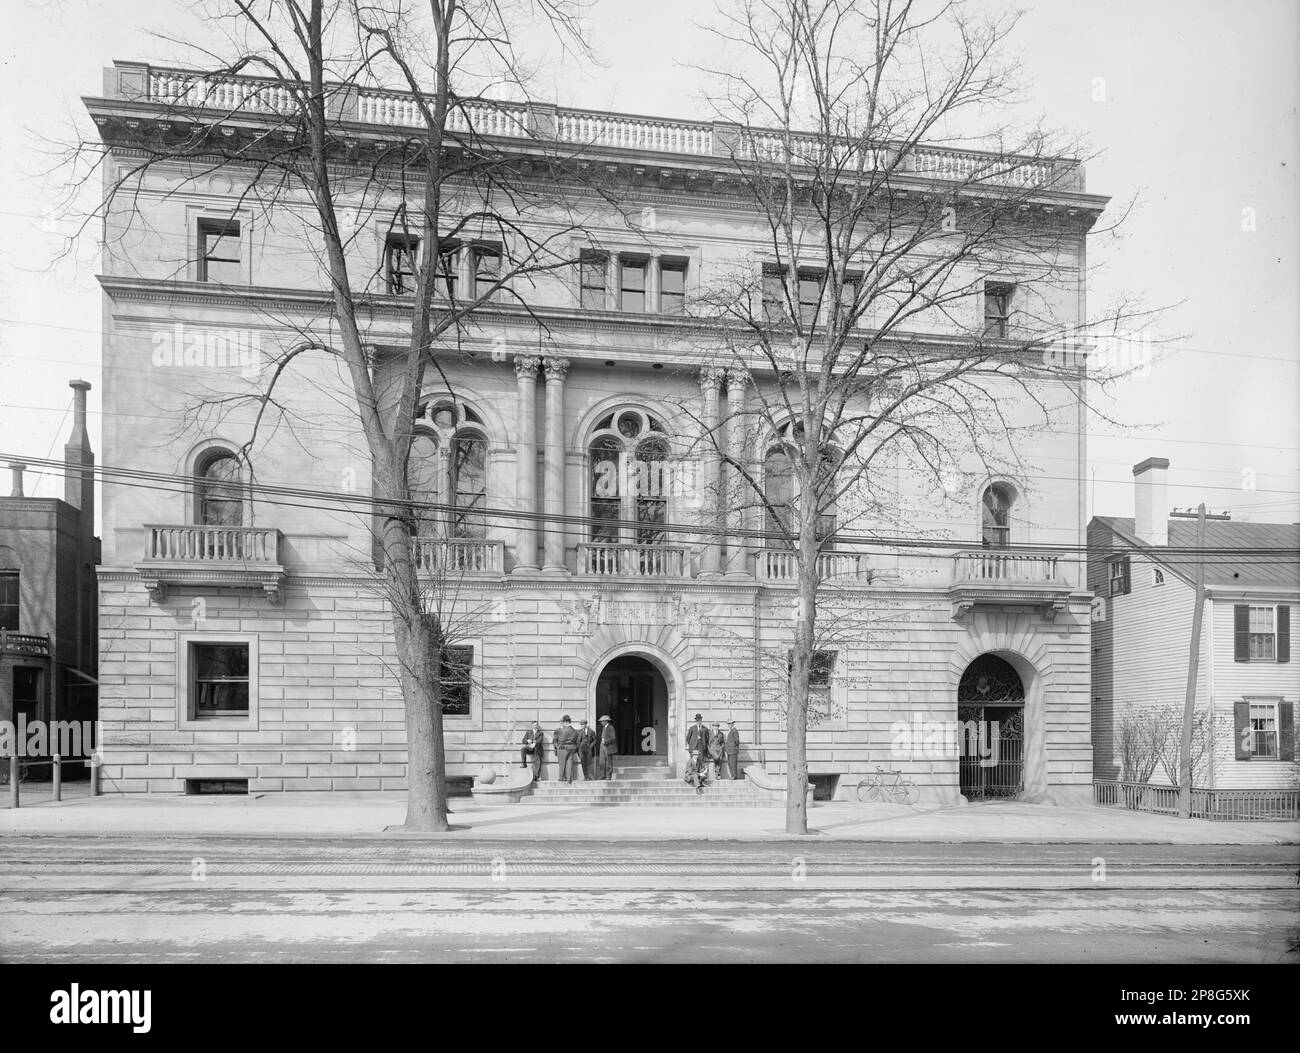 "Englisch: Hendrie Hall auf der Elm Street in New Haven, Conn., kurz nach ihrer Fertigstellung im Jahr 1900. Das Gebäude beherbergte ursprünglich die Yale Law School vor ihrem Umzug in das Sterling Law Building im Jahr 1932 und wurde später zum Gebäude der Yale School of Music.; zwischen 1900 und 1915 Datum QS:P,+1950-00-00T00:00:00Z/7,P1319,+1900-00-00T00:00:00Z/9,P1326,+1915-00-00T00:00:00Z/9; Dieses Bild ist bei der United States Library of Congress unter dem digitalen Identitätsnachweis det.4a19628 erhältlich. Dieses Tag gibt keinen Hinweis auf den Urheberrechtsstatus des beigefügten Werks. Eine normale Kopie Stockfoto